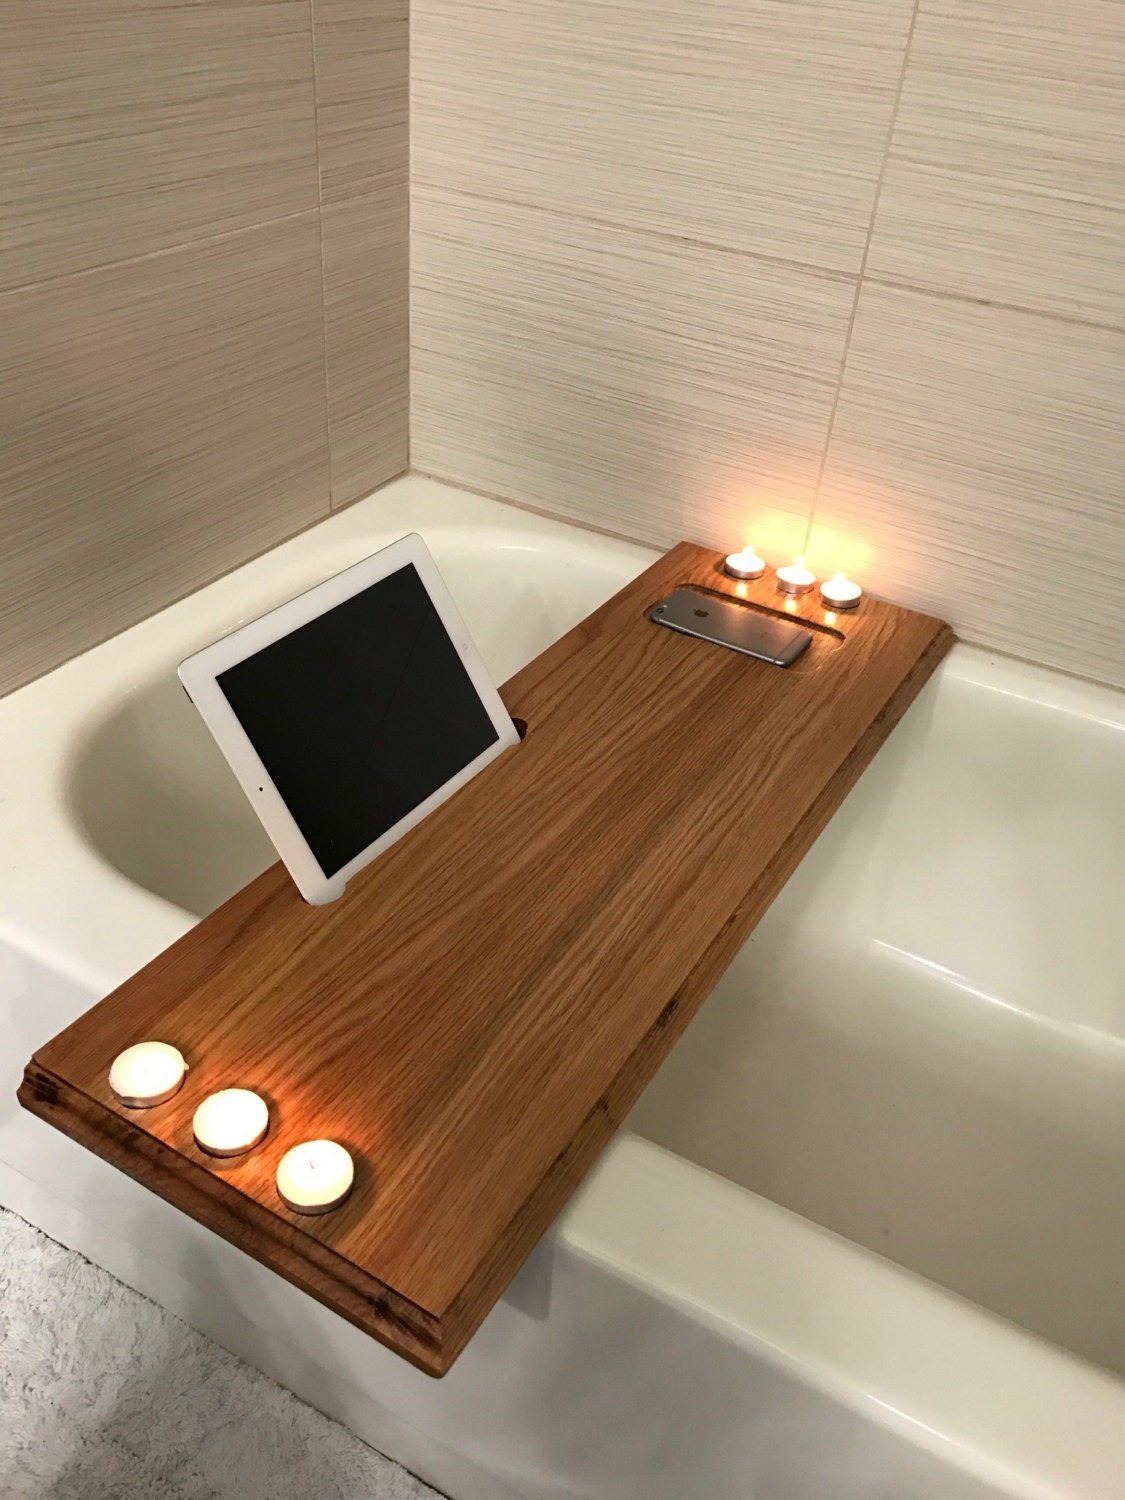  Bath  Tub Caddy bath  tray  wood bathtub caddy wood bathtub